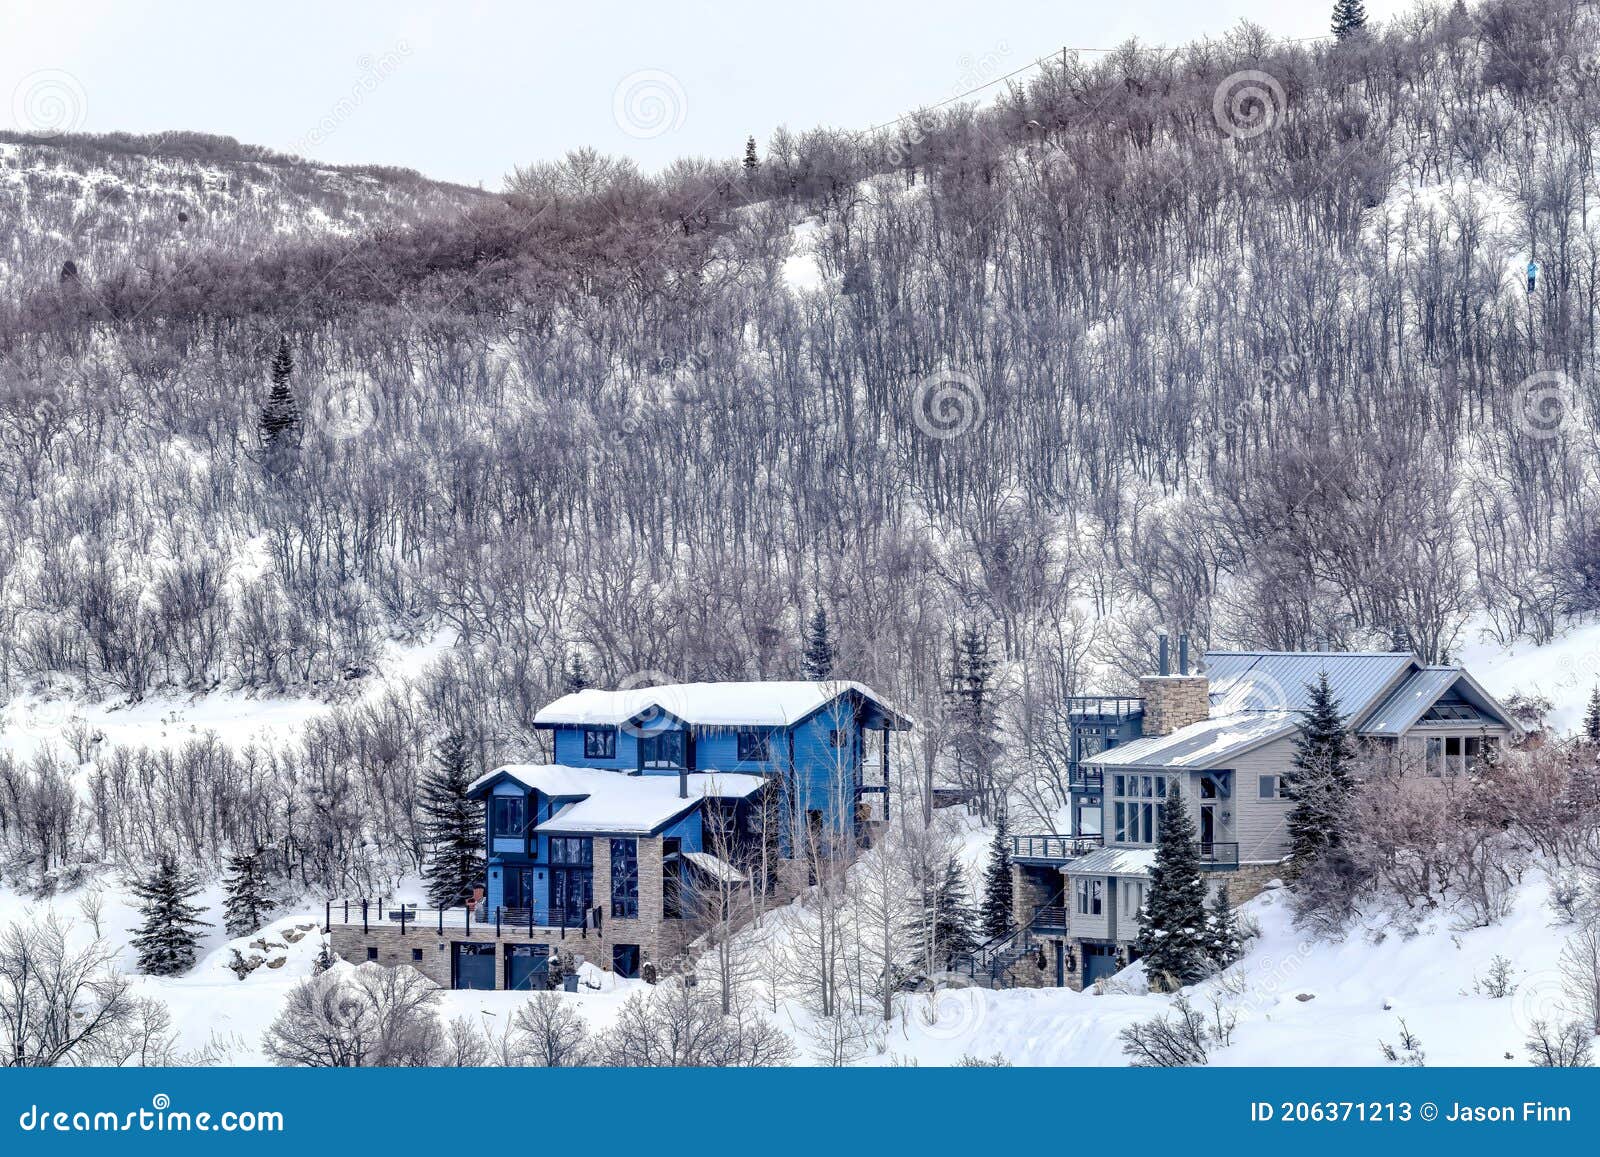 Casas De Lujo En El Terreno Cubierto De Nieve De Un Pueblo De Montaña En  Temporada De Invierno Imagen de archivo - Imagen de nieve, vecindad:  206371213